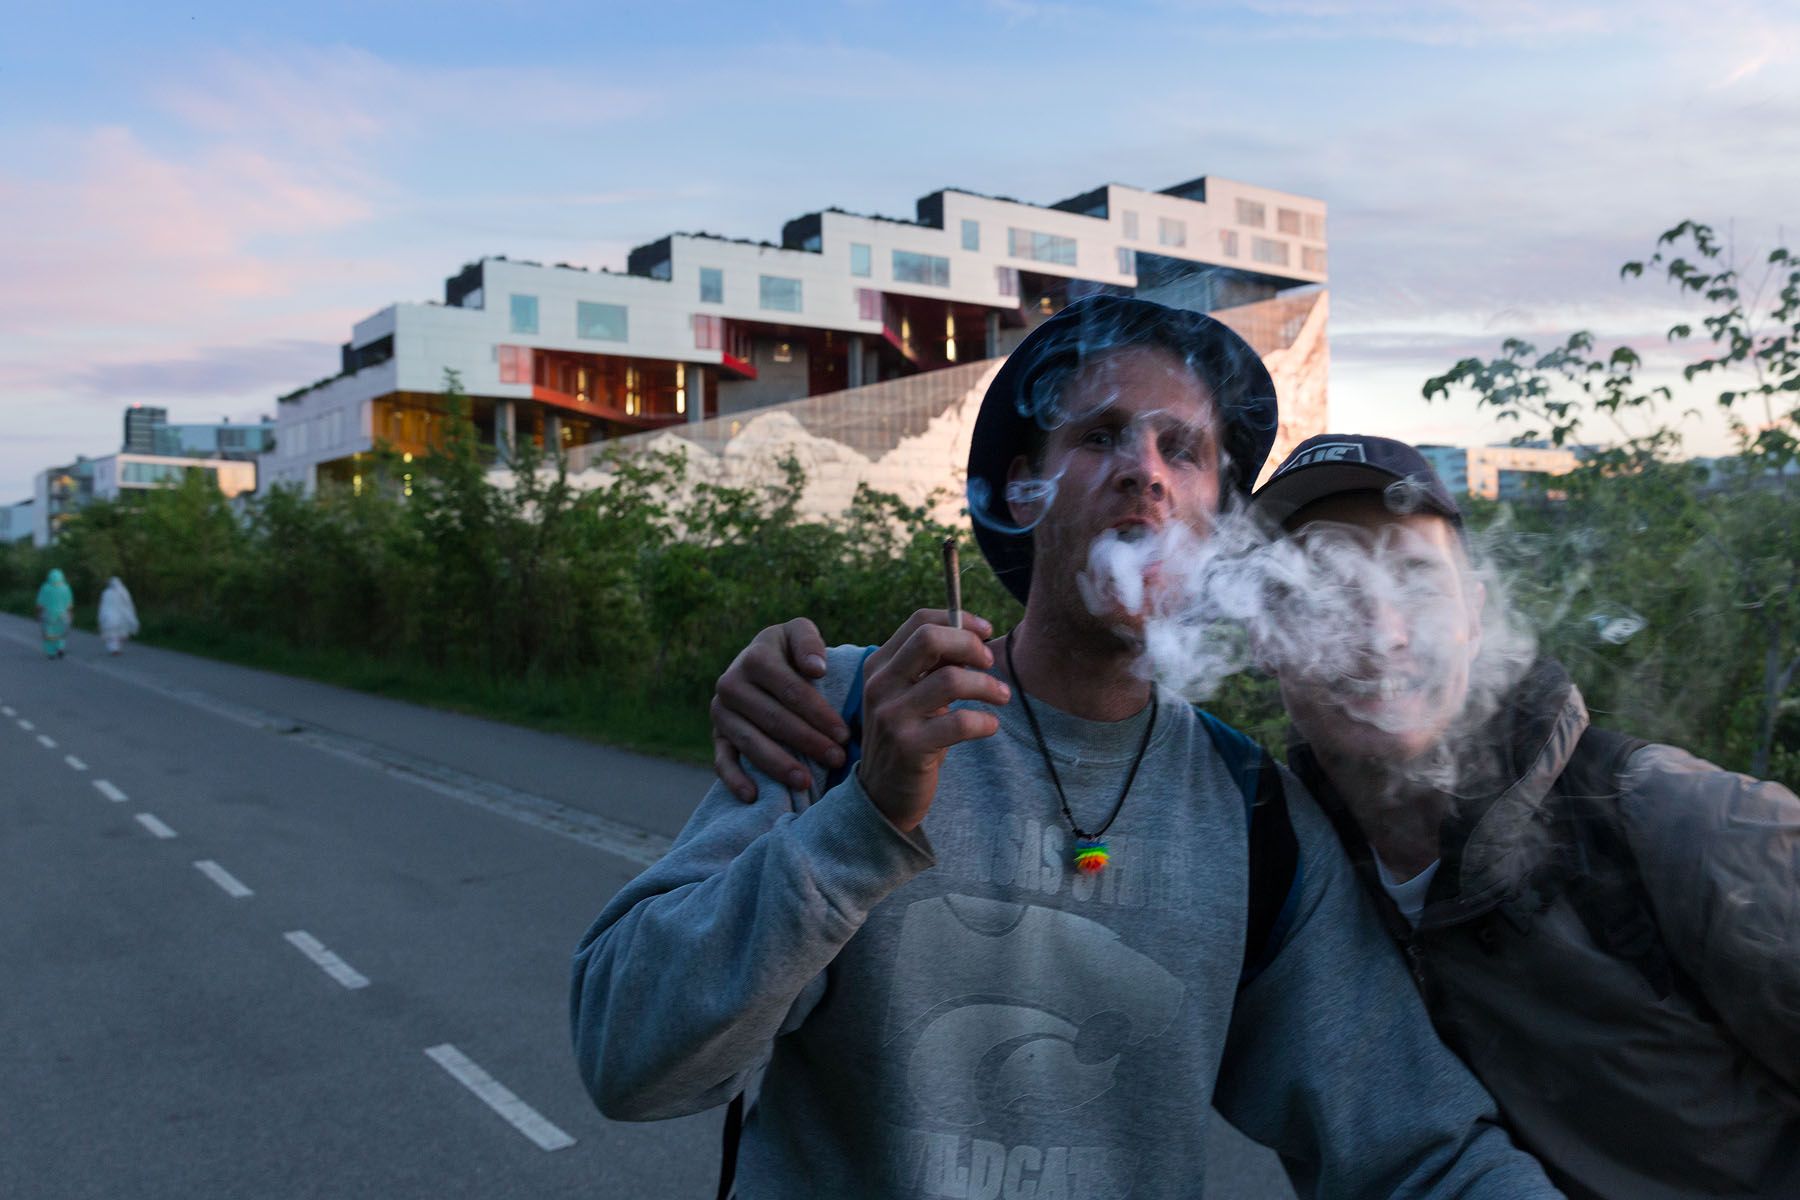 MTN Mountain Dwellings, Copenhagen – Bjarke Ingels + Julien de Smedt